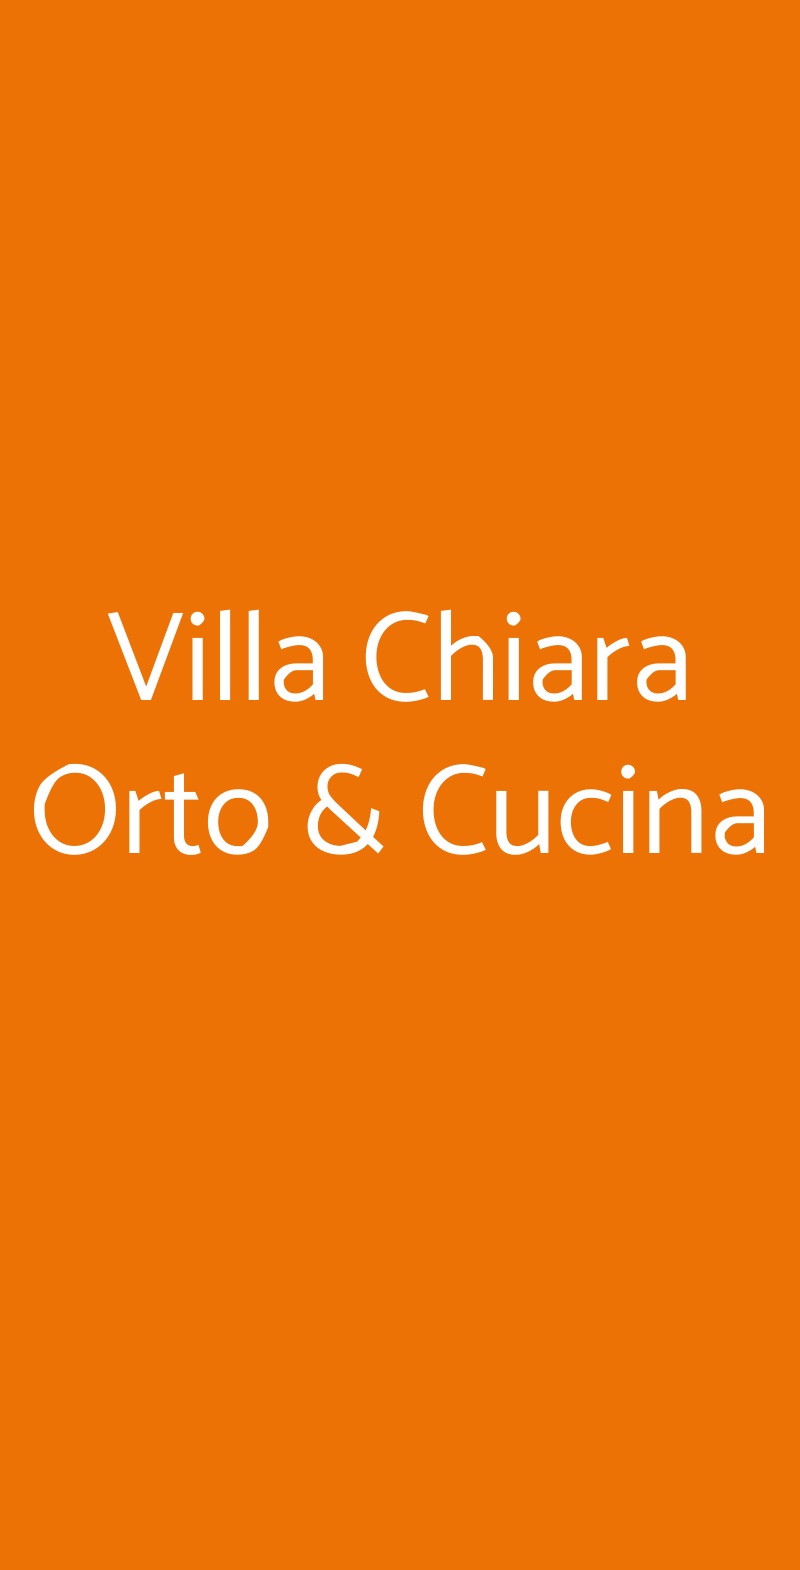 Villa Chiara Orto & Cucina Vico Equense menù 1 pagina